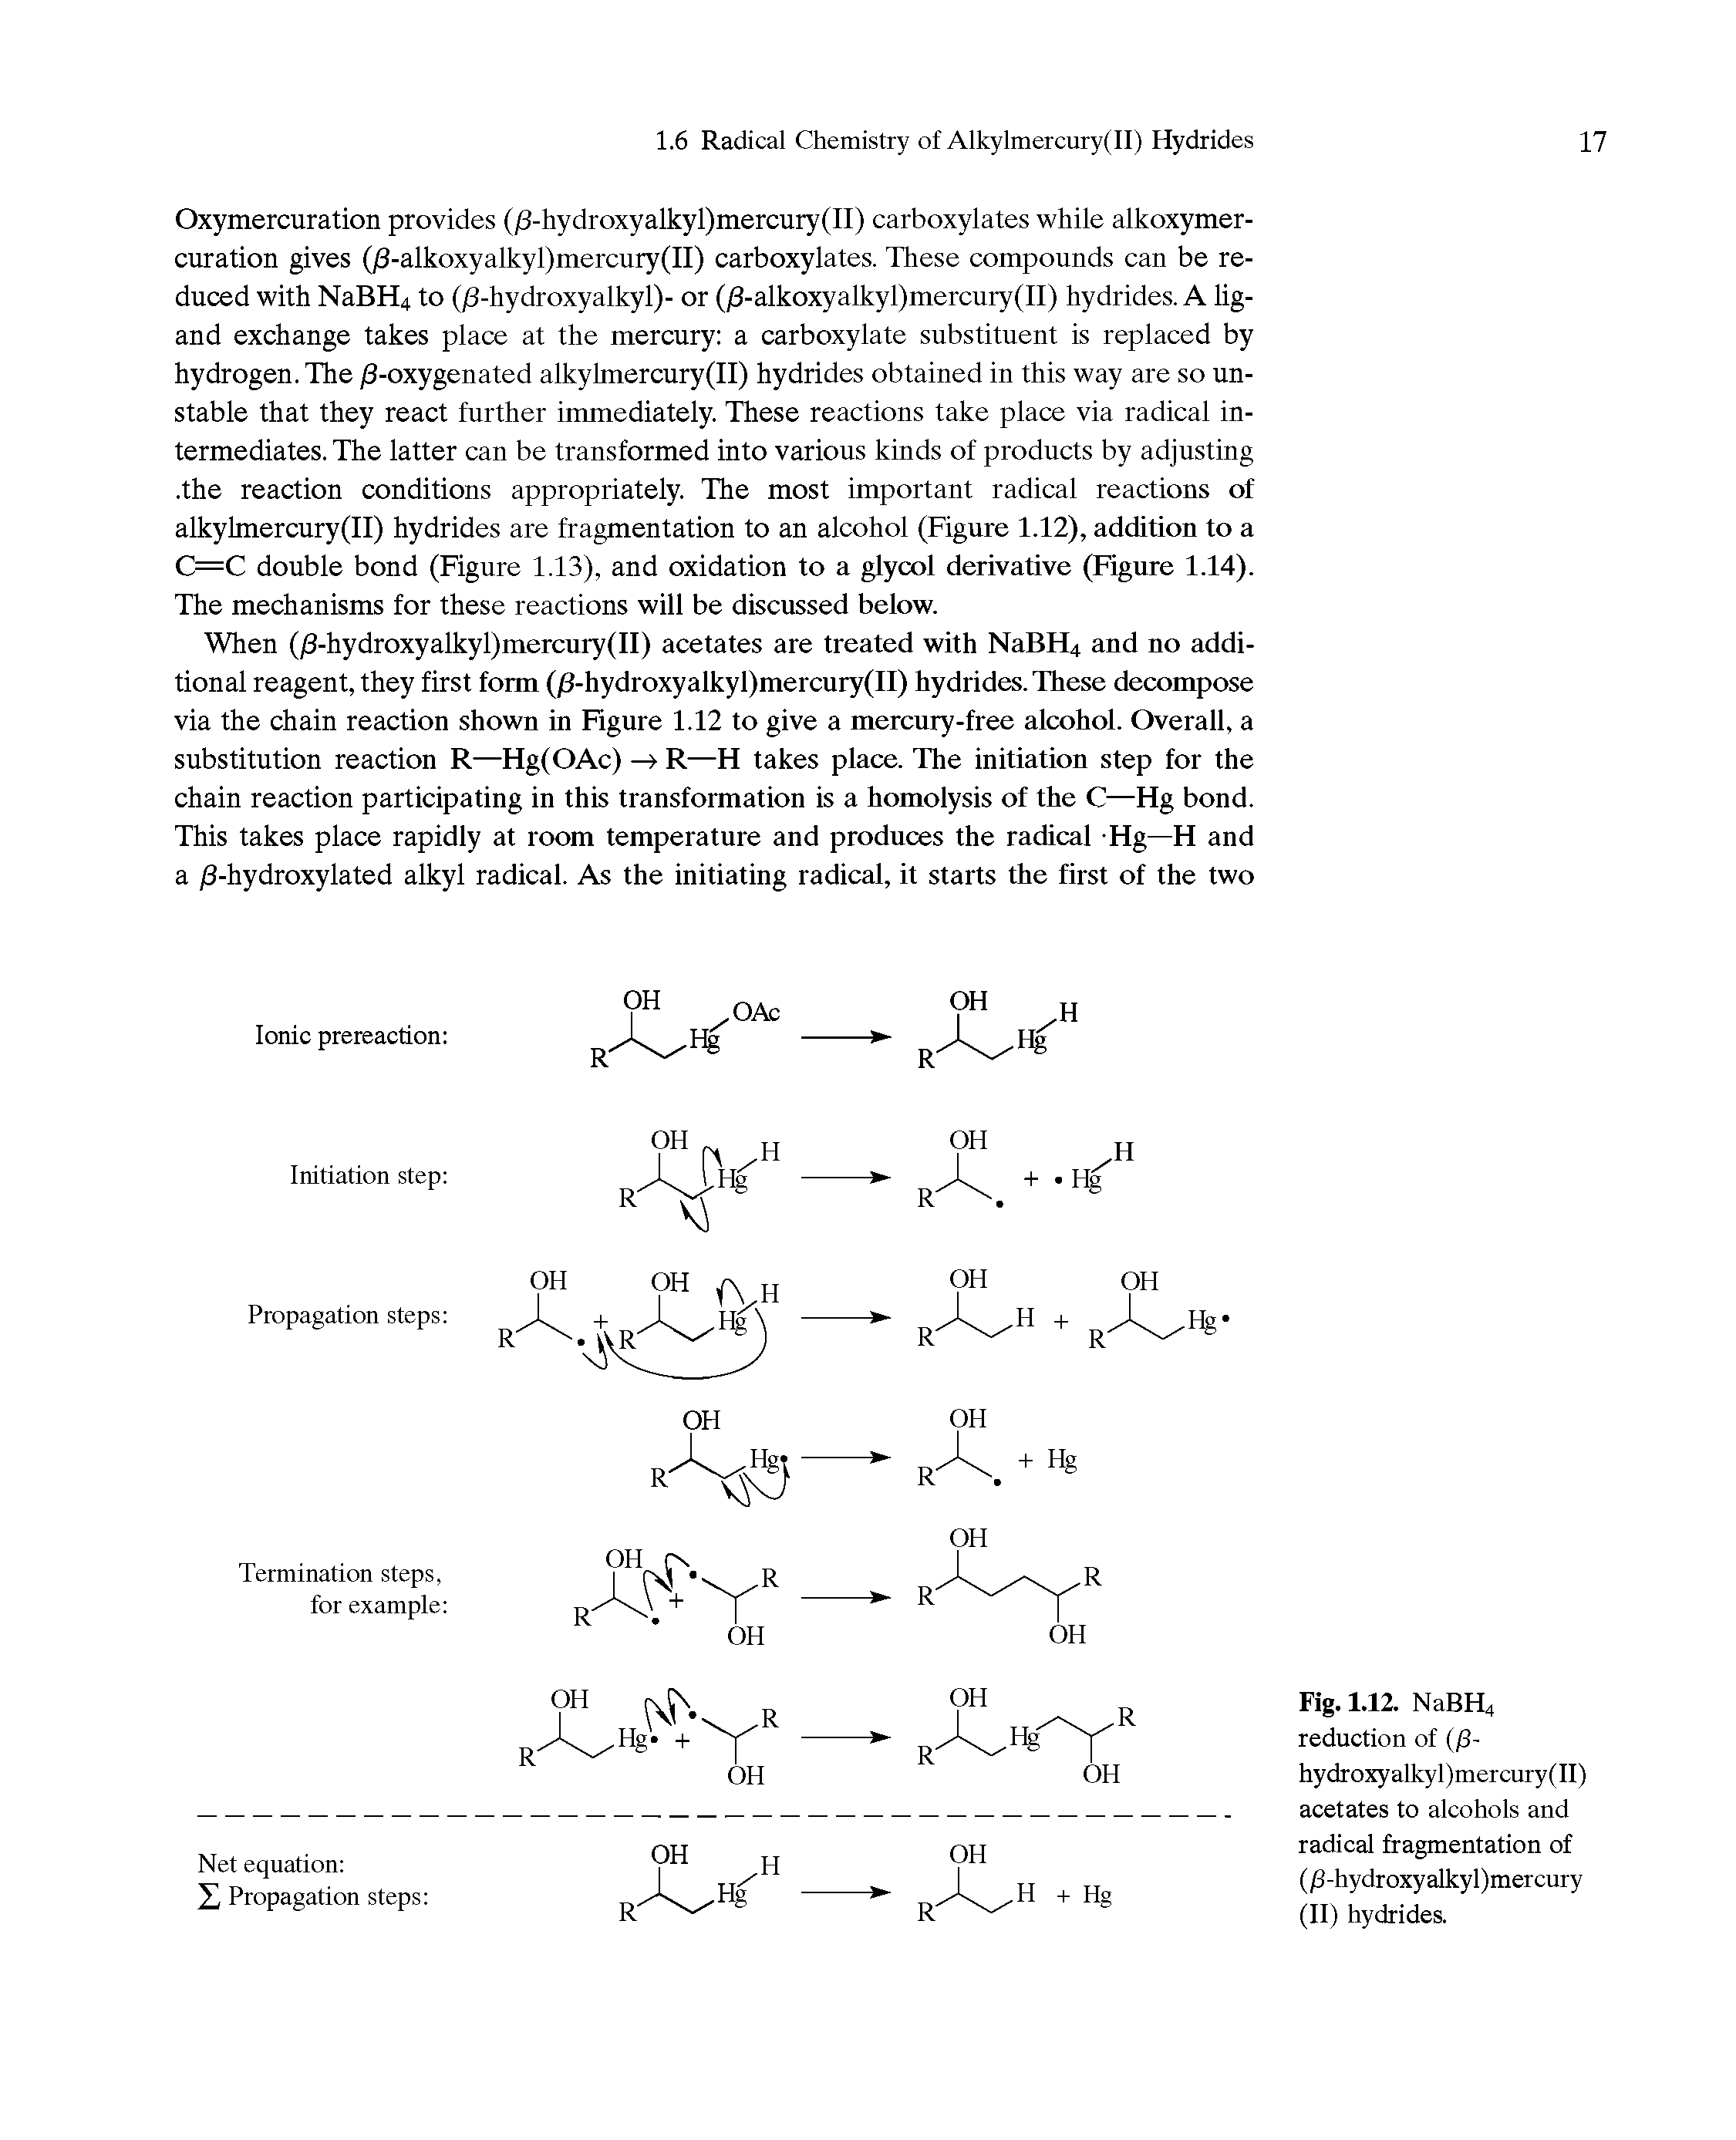 Fig. 1.12. NaBH4 reduction of (/3-hydroxyalkyl)mercury(II) acetates to alcohols and radical fragmentation of (j3-hydroxyalkyl)mercury (II) hydrides.